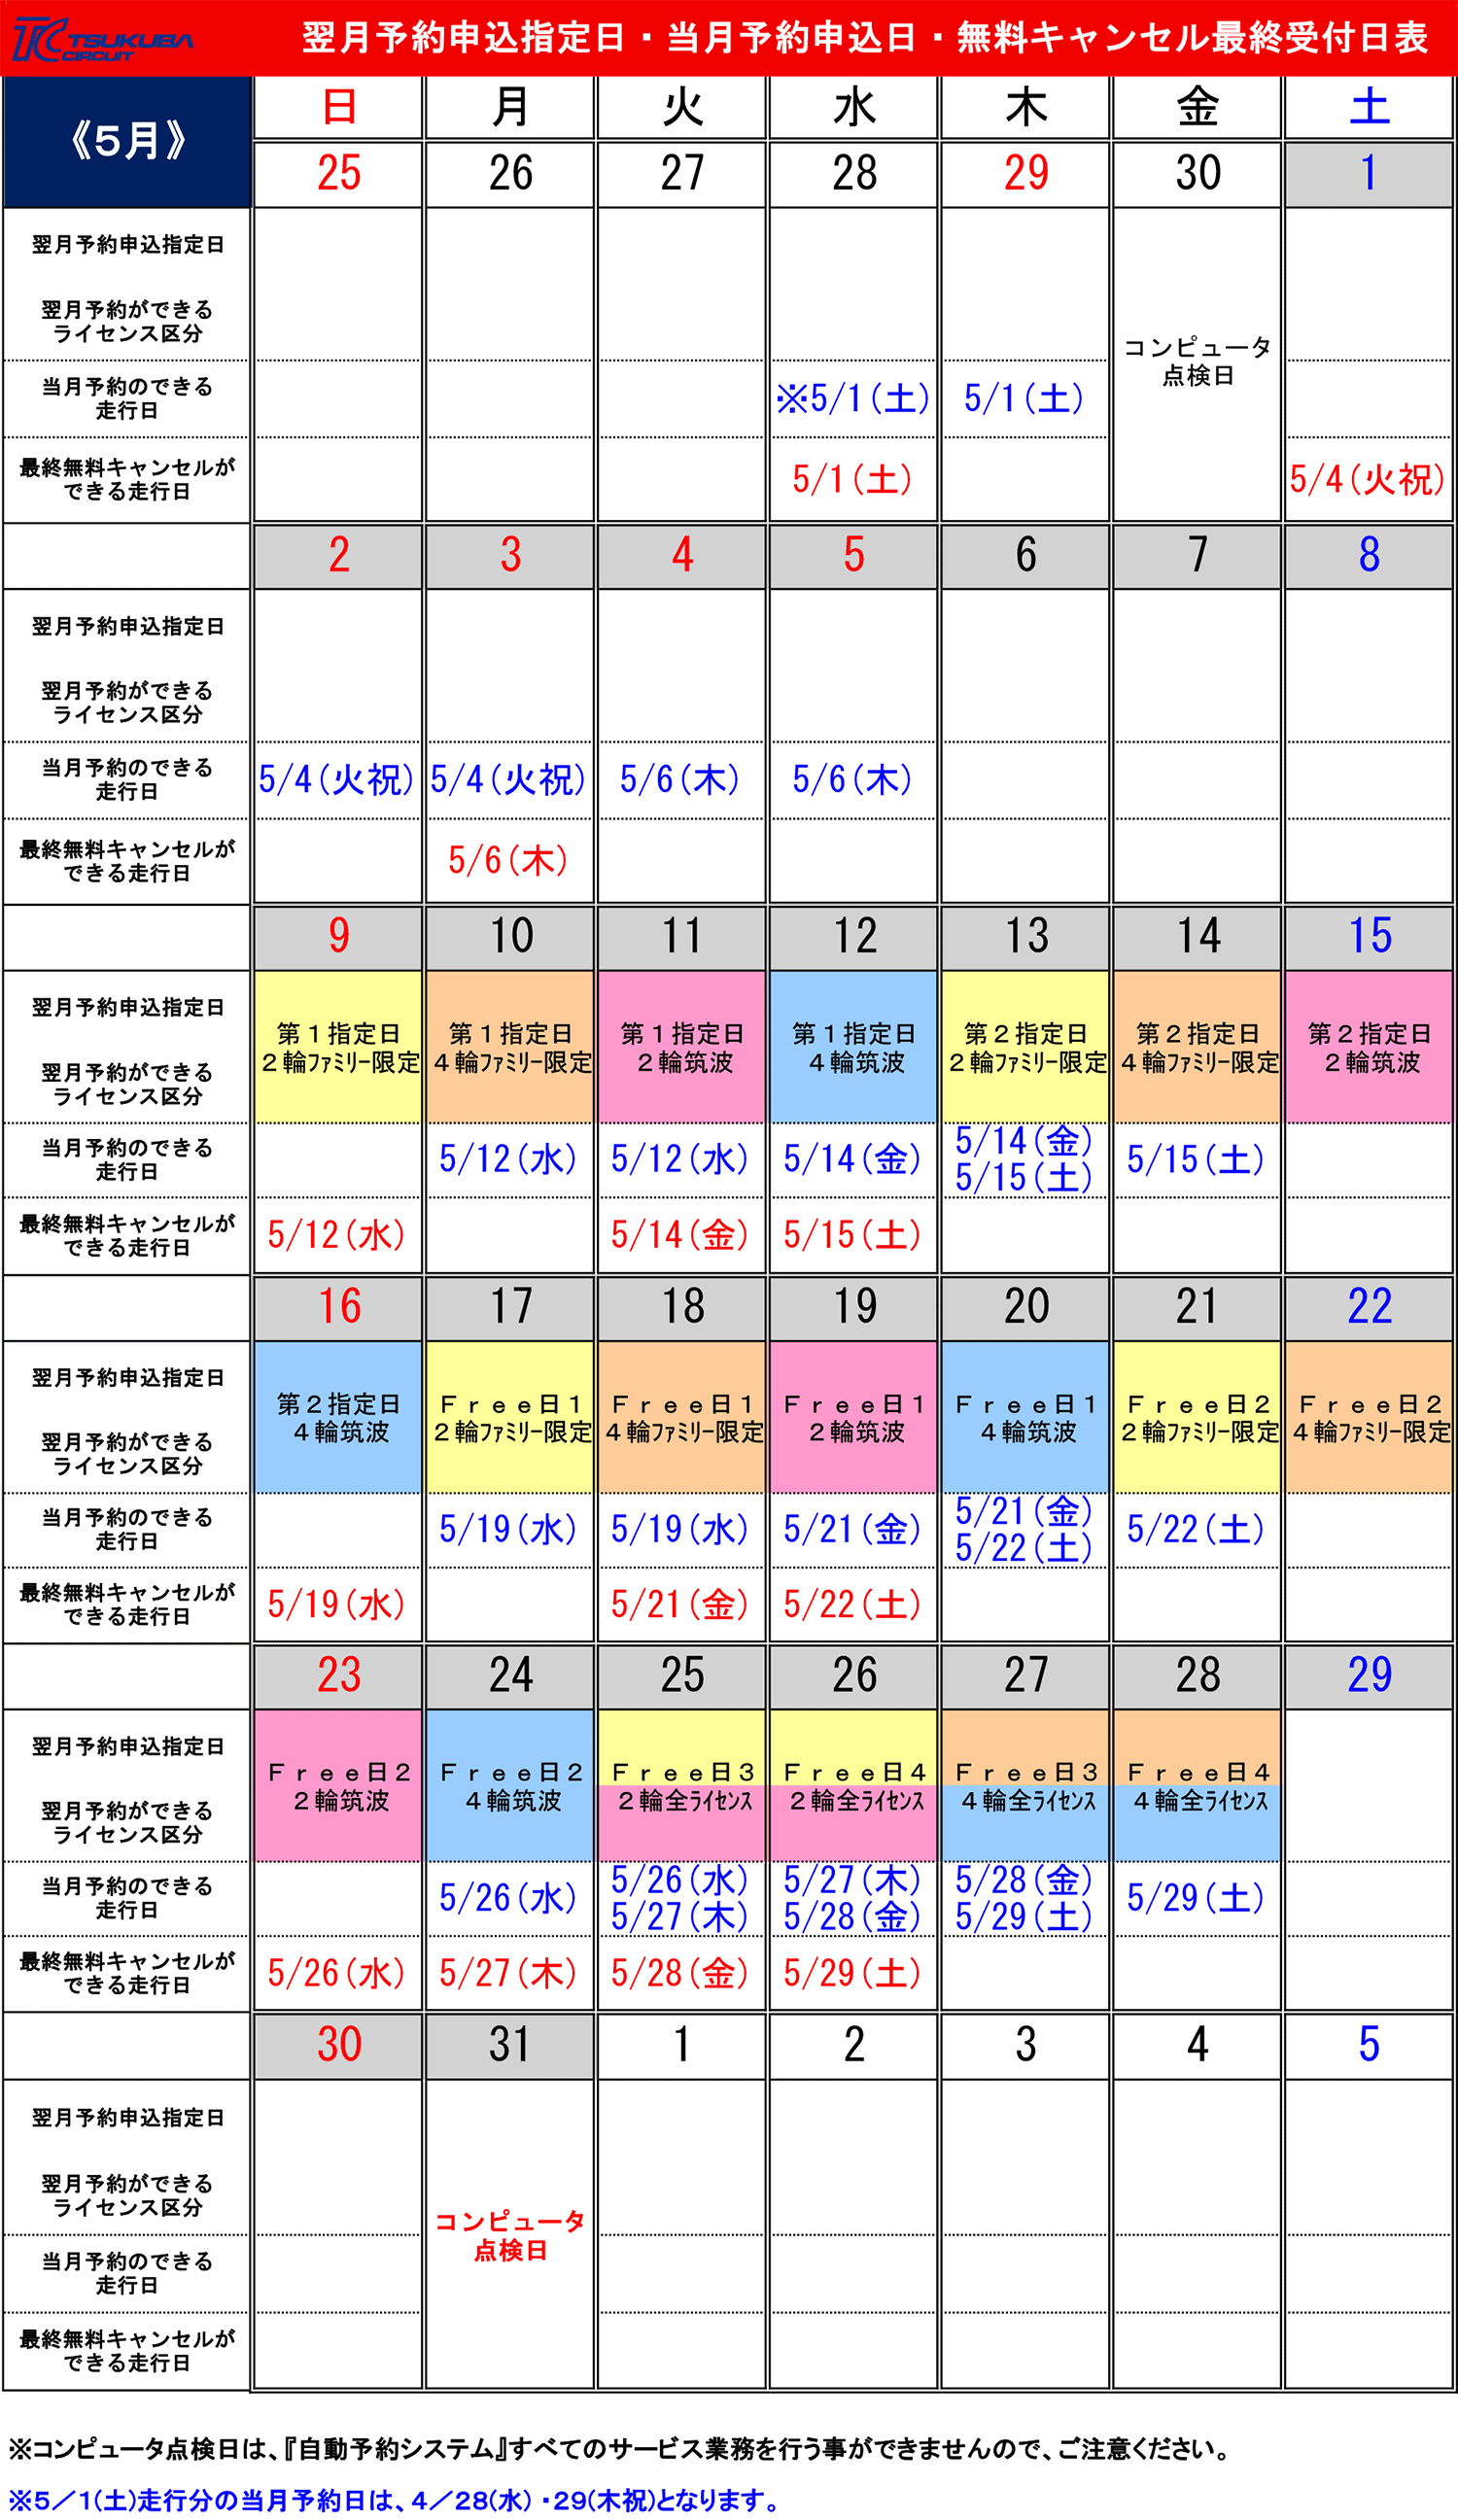 コース00 予約指定日カレンダー 筑波サーキット